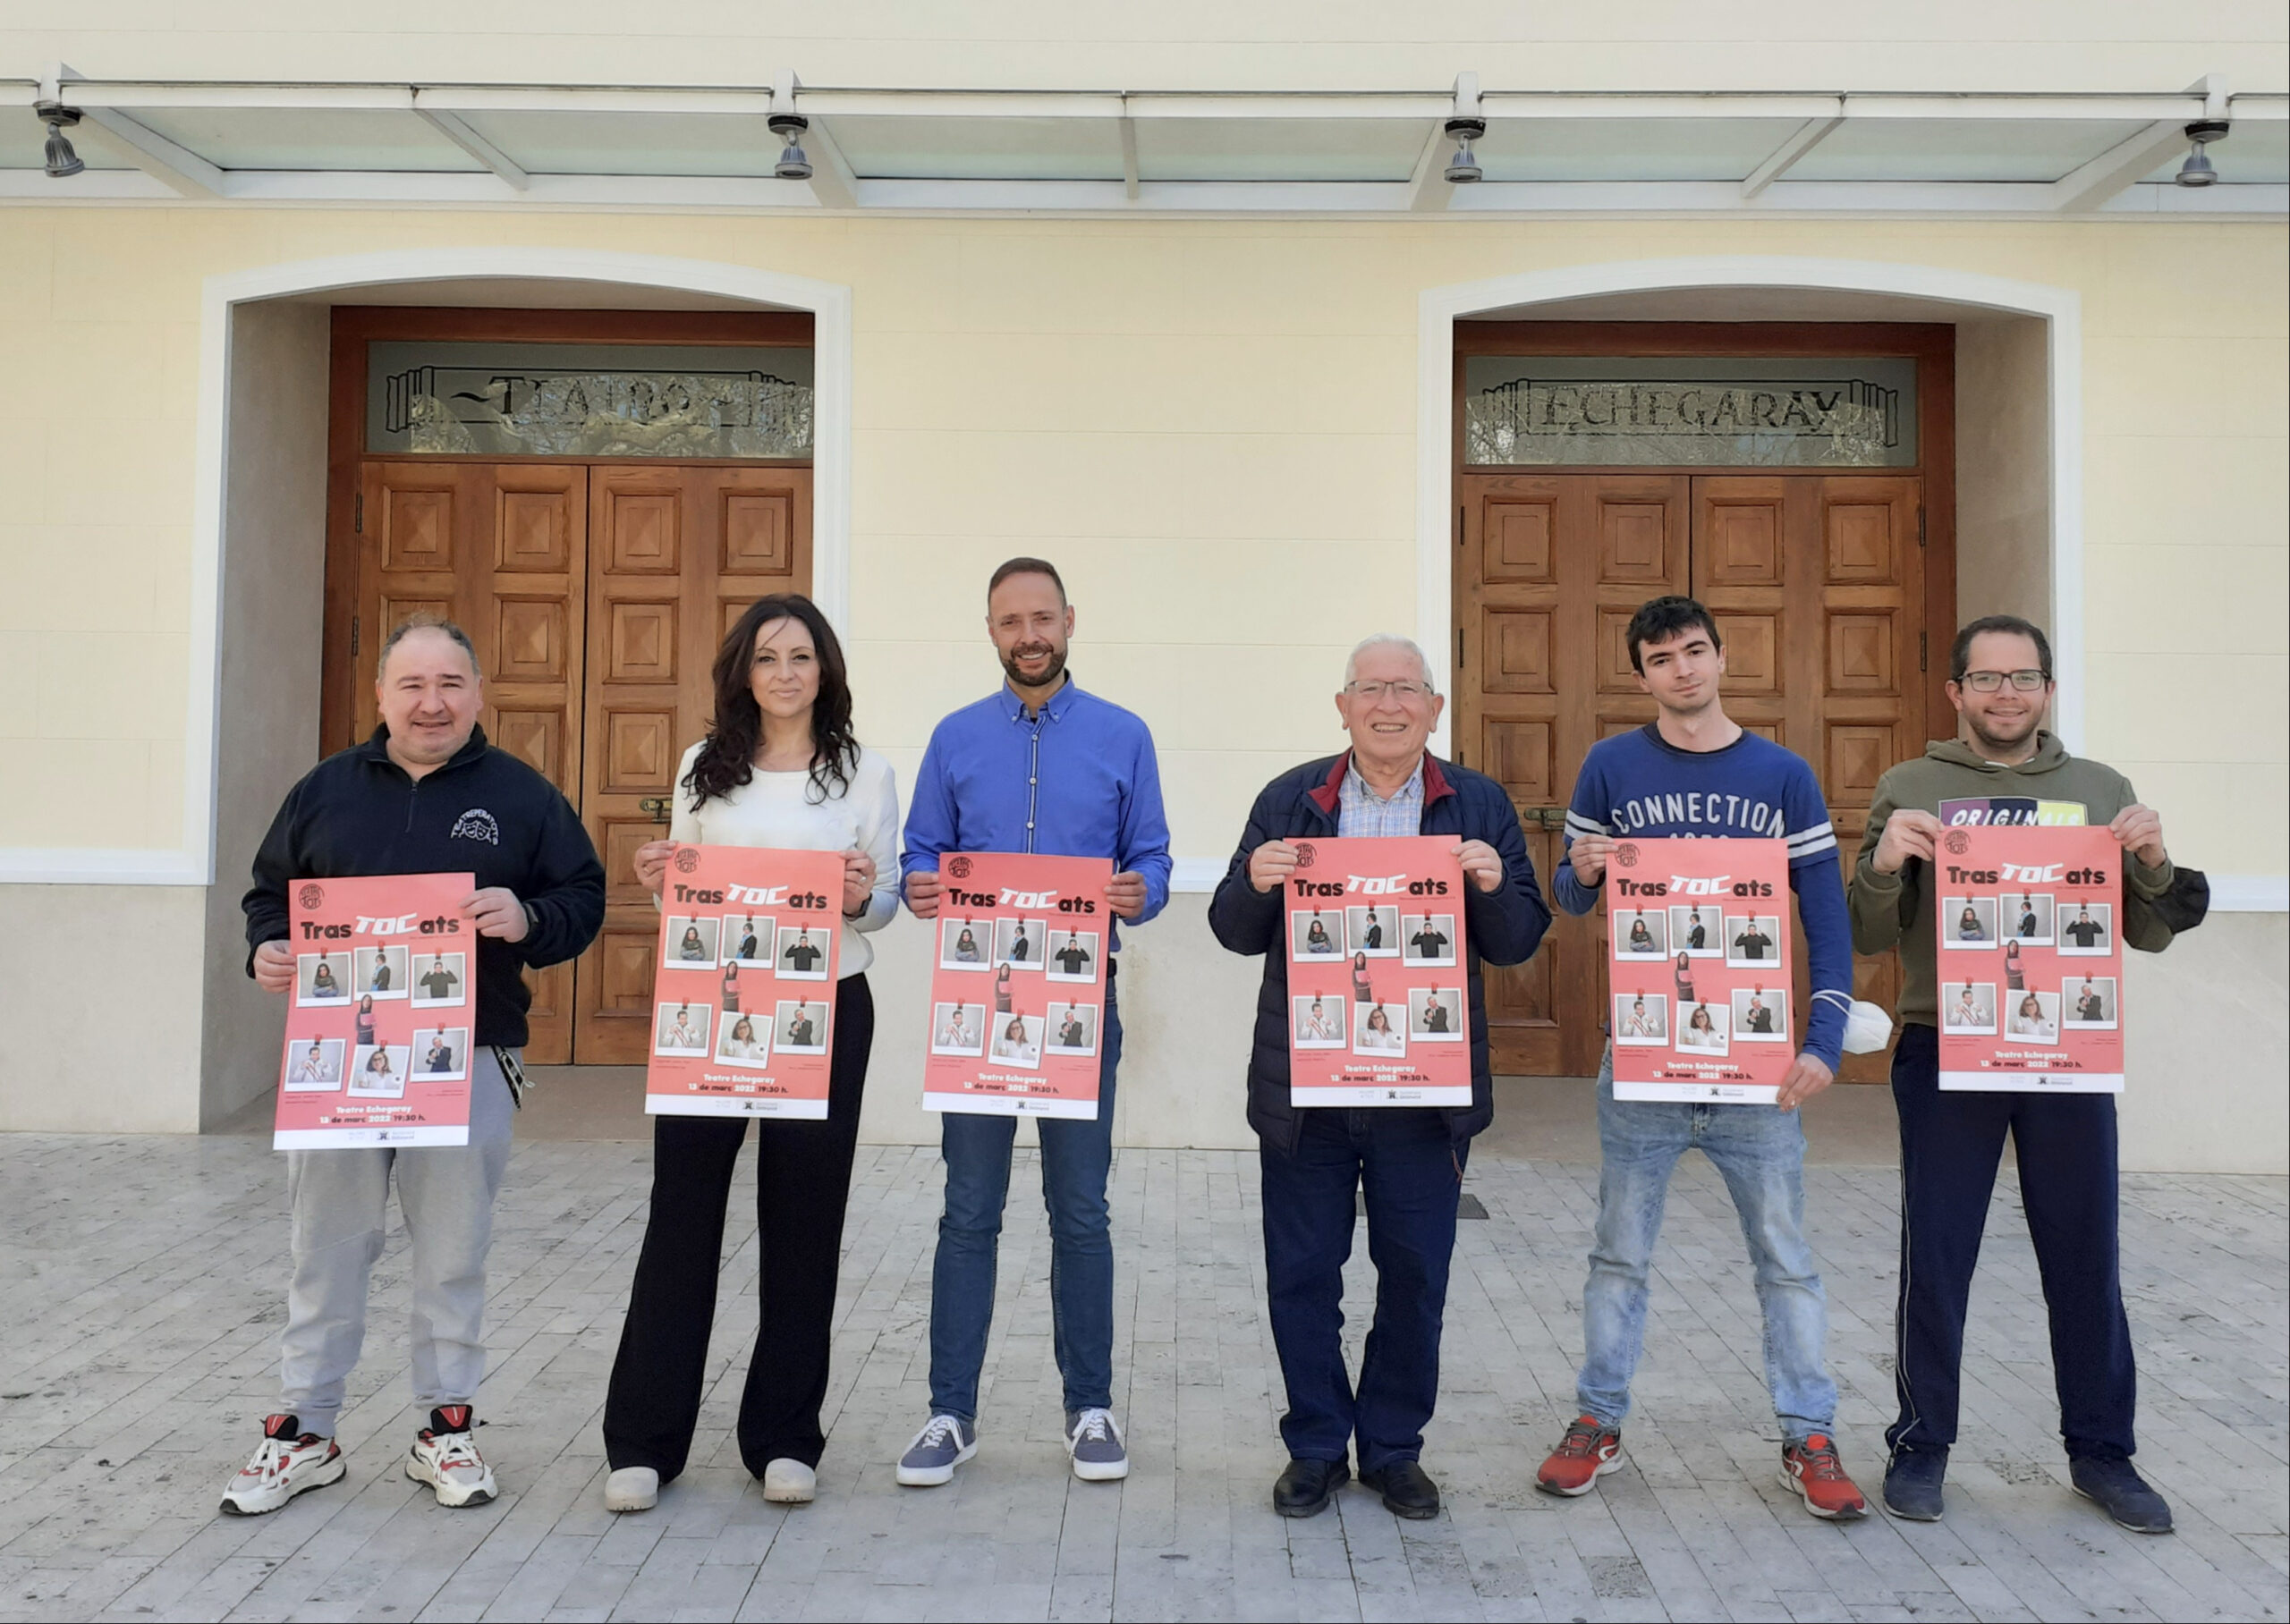 'Mayores Activos' presentará este domingo en el Echegaray la obra 'Trastocats' El Periódico de Ontinyent - Noticias en Ontinyent